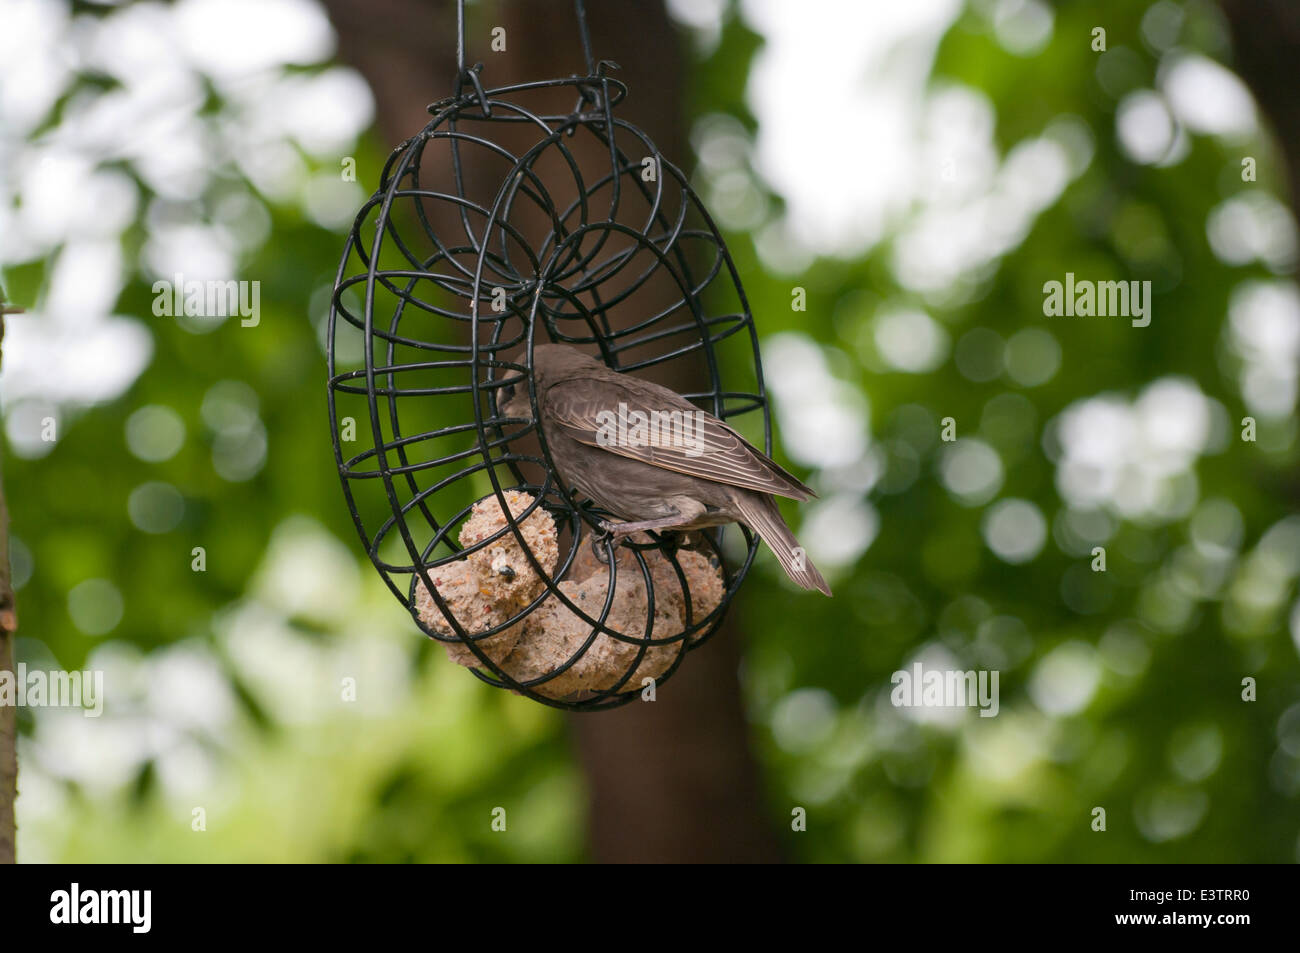 Juvenille Starling se nourrissant de boules de graisse dans un jardin Banque D'Images